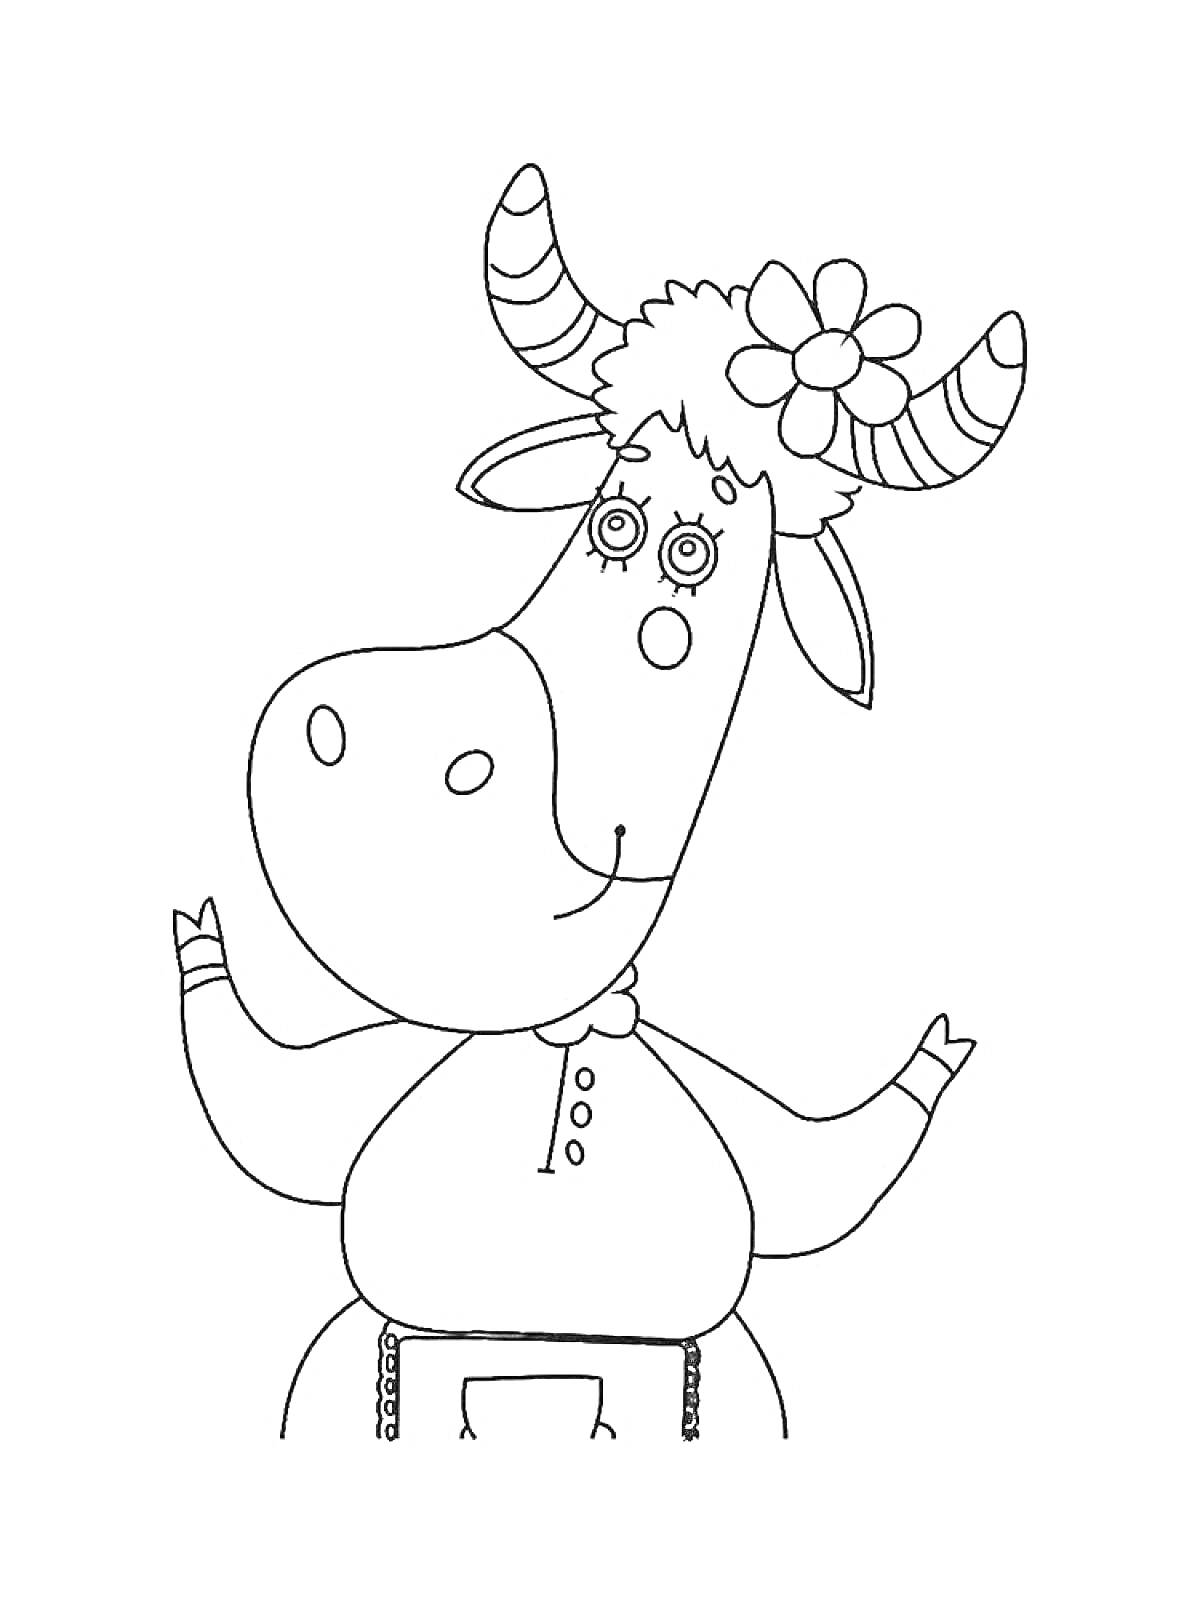 Буренка Даша с цветком на голове и поднятыми руками